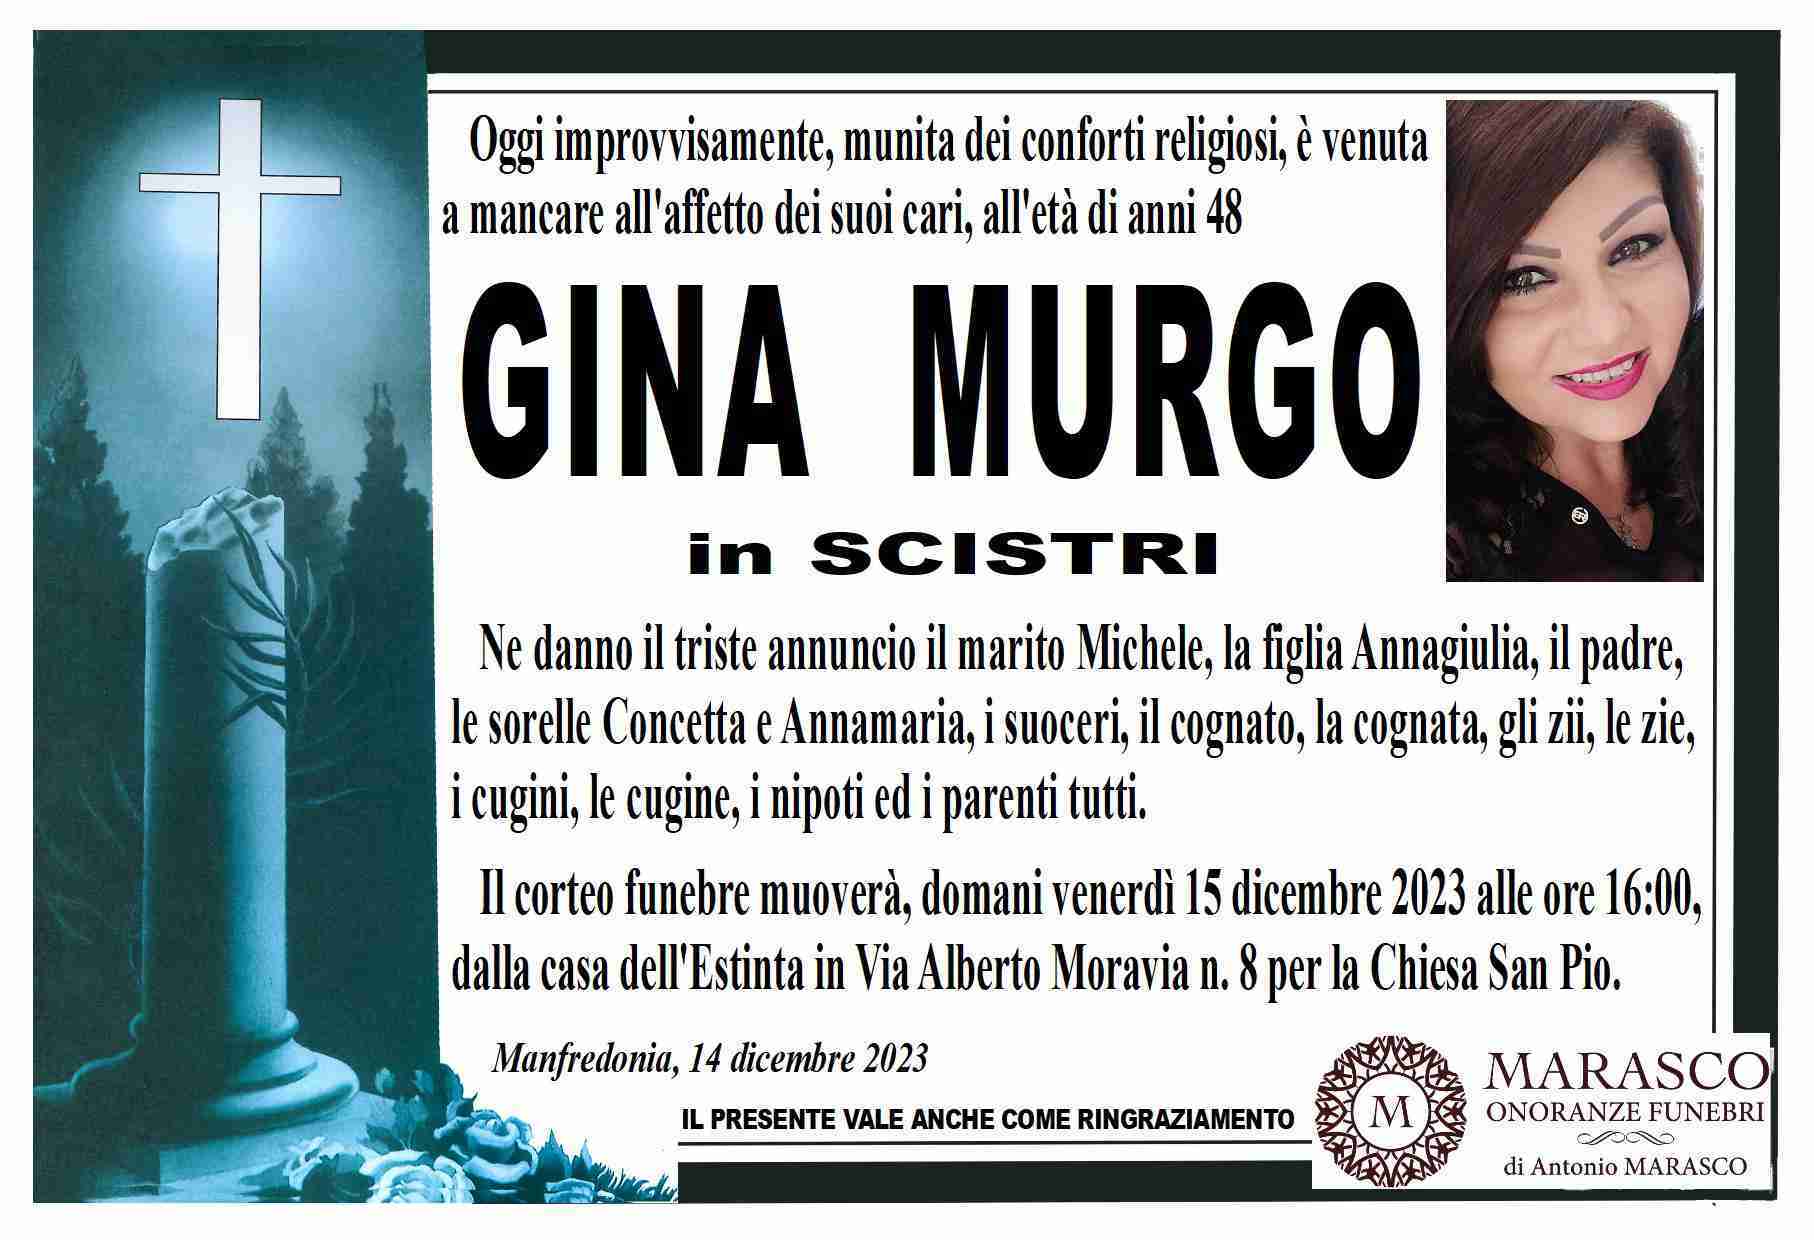 Gina Murgo